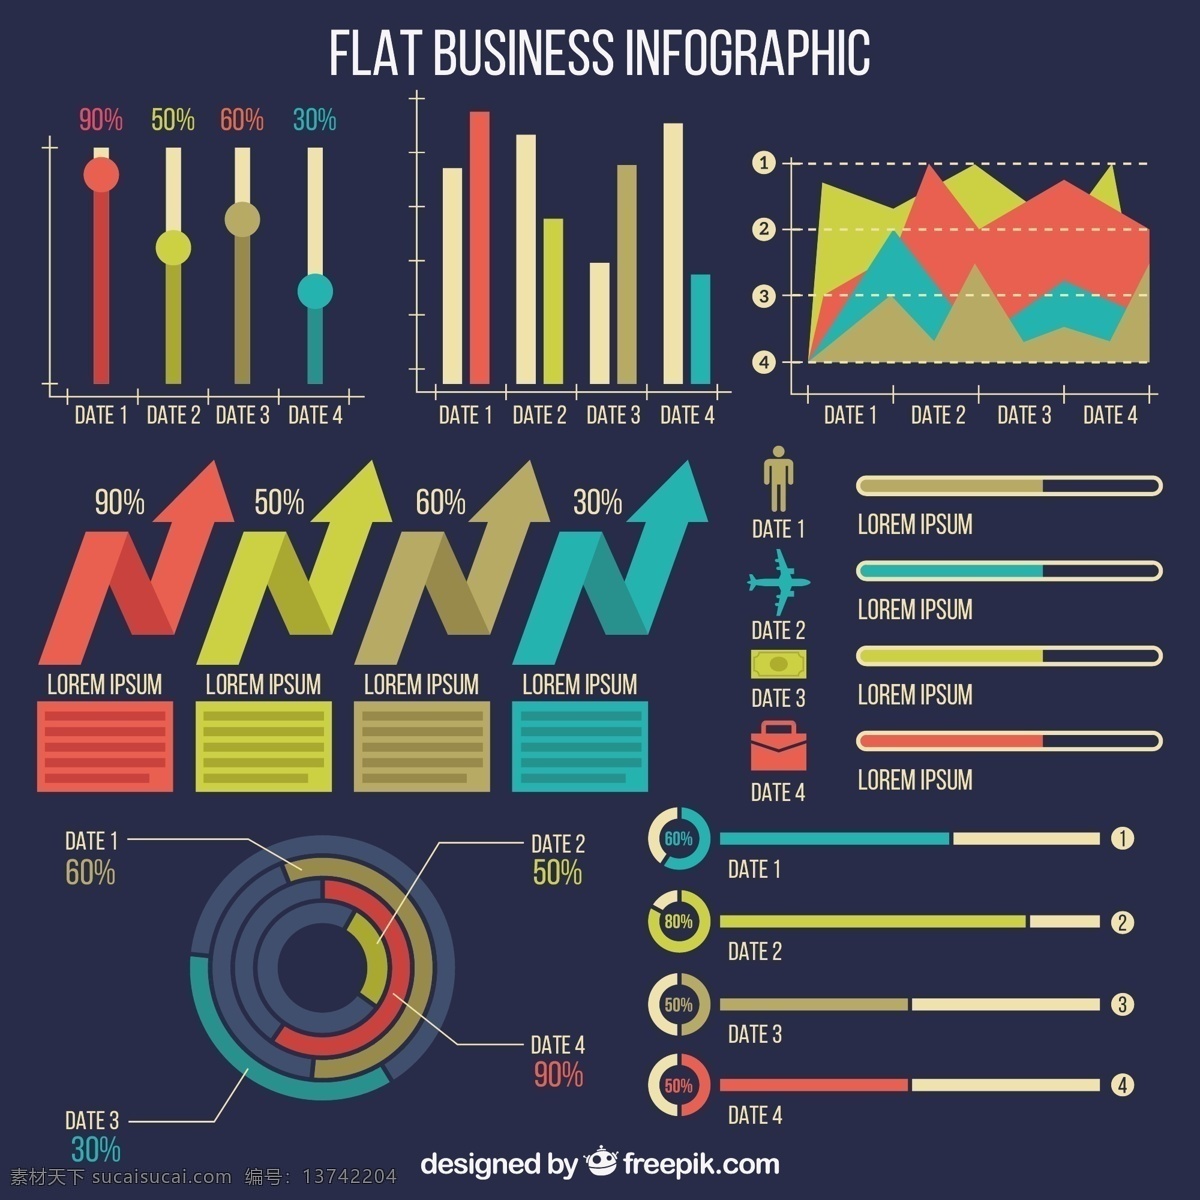 商业图表元素 图表 业务 模板 营销 平 箭头 图形 平面设计 信息 流程 数据 要素 步骤 生长 发展